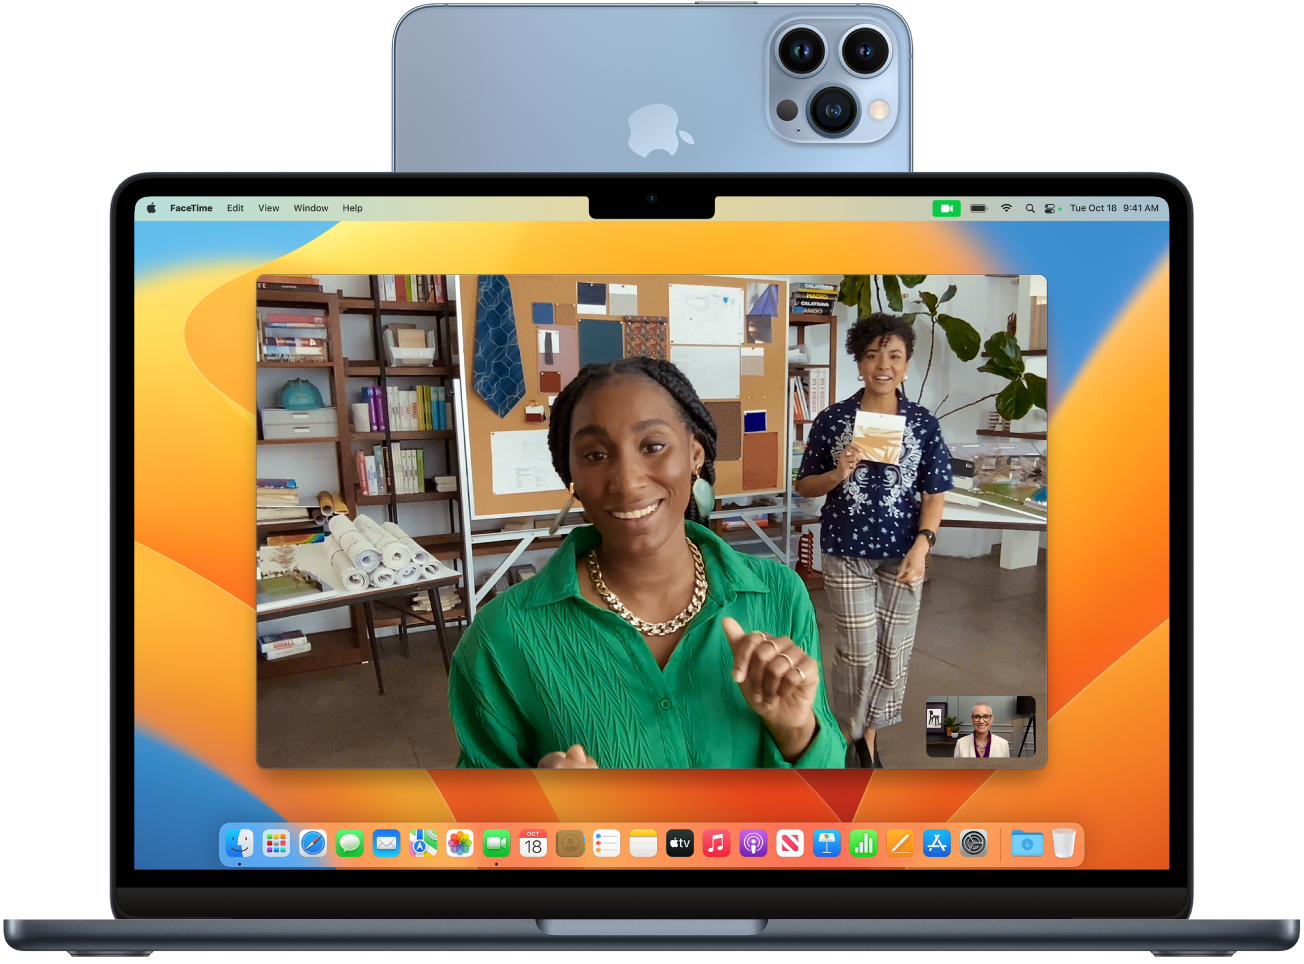 Mac са iPhone-ом који се користи као веб-камера монтиран на врху екрана. Слика са iPhone камере се види на екрану Mac рачунара.